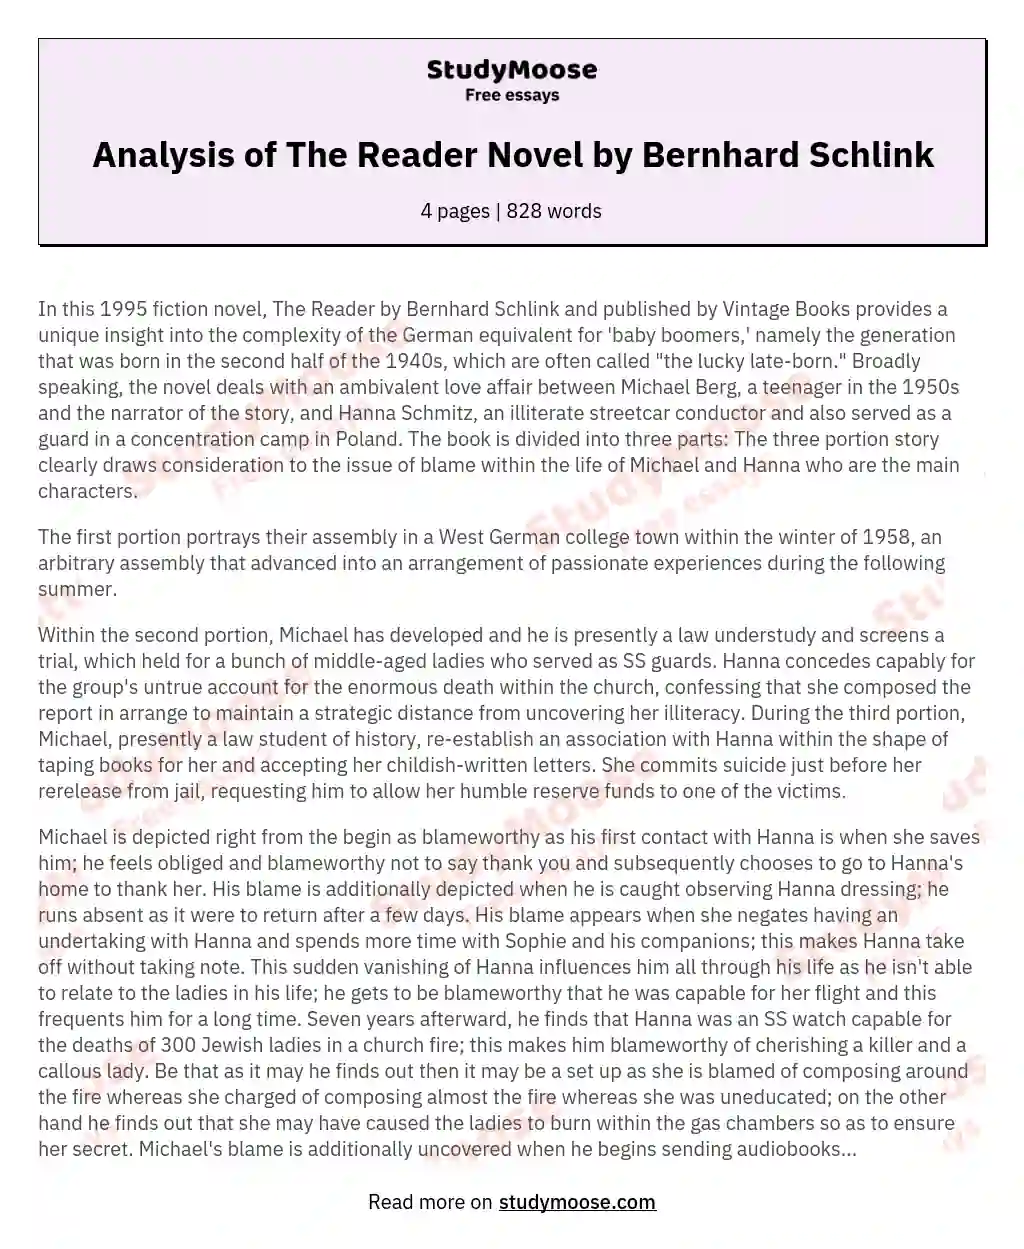 Analysis of The Reader Novel by Bernhard Schlink essay